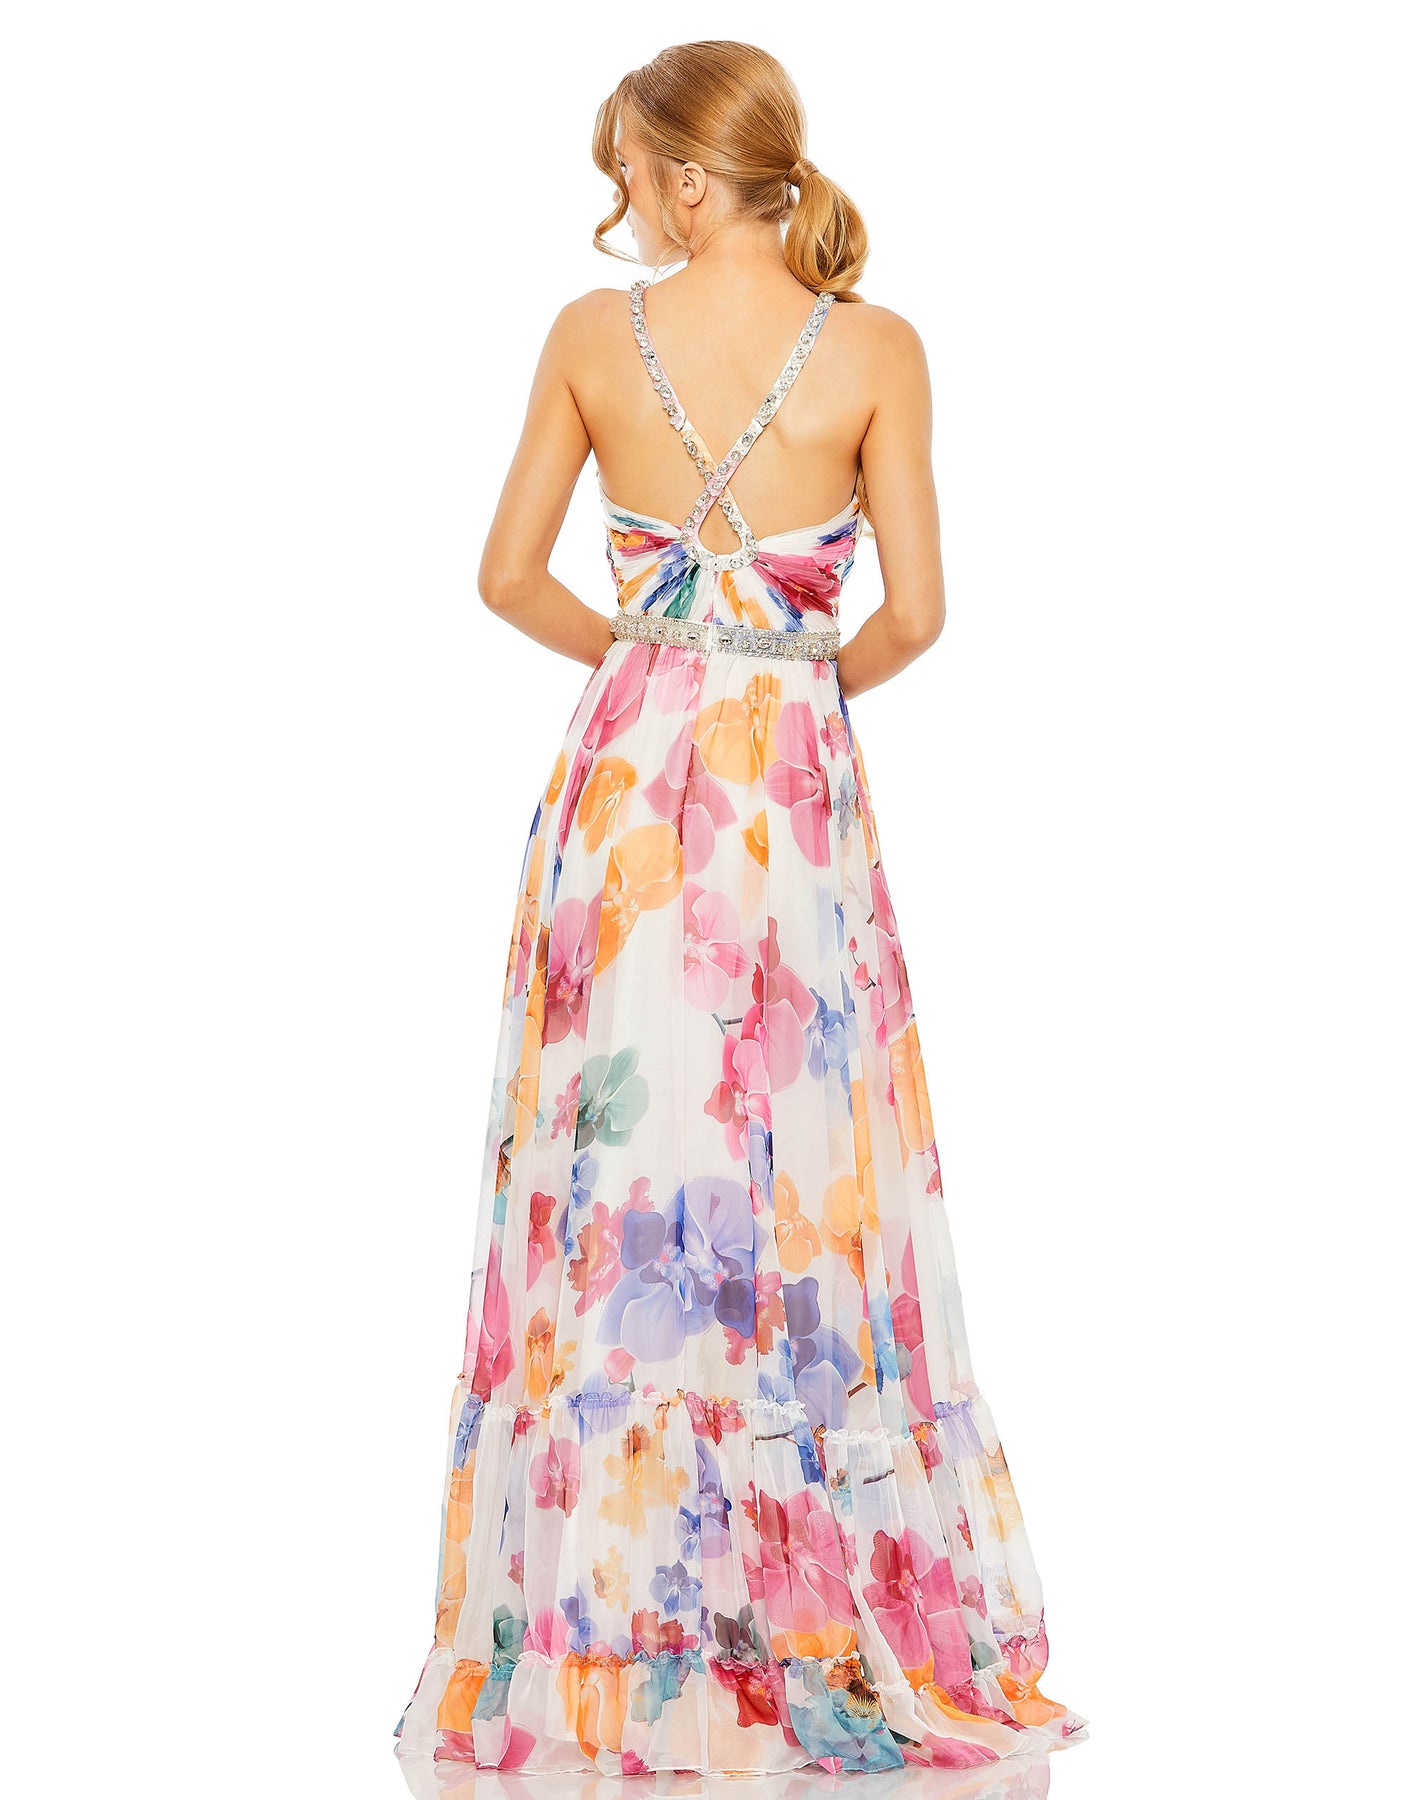 Plunge Neck Embellished A Line Floral Print Dress – Mac Duggal